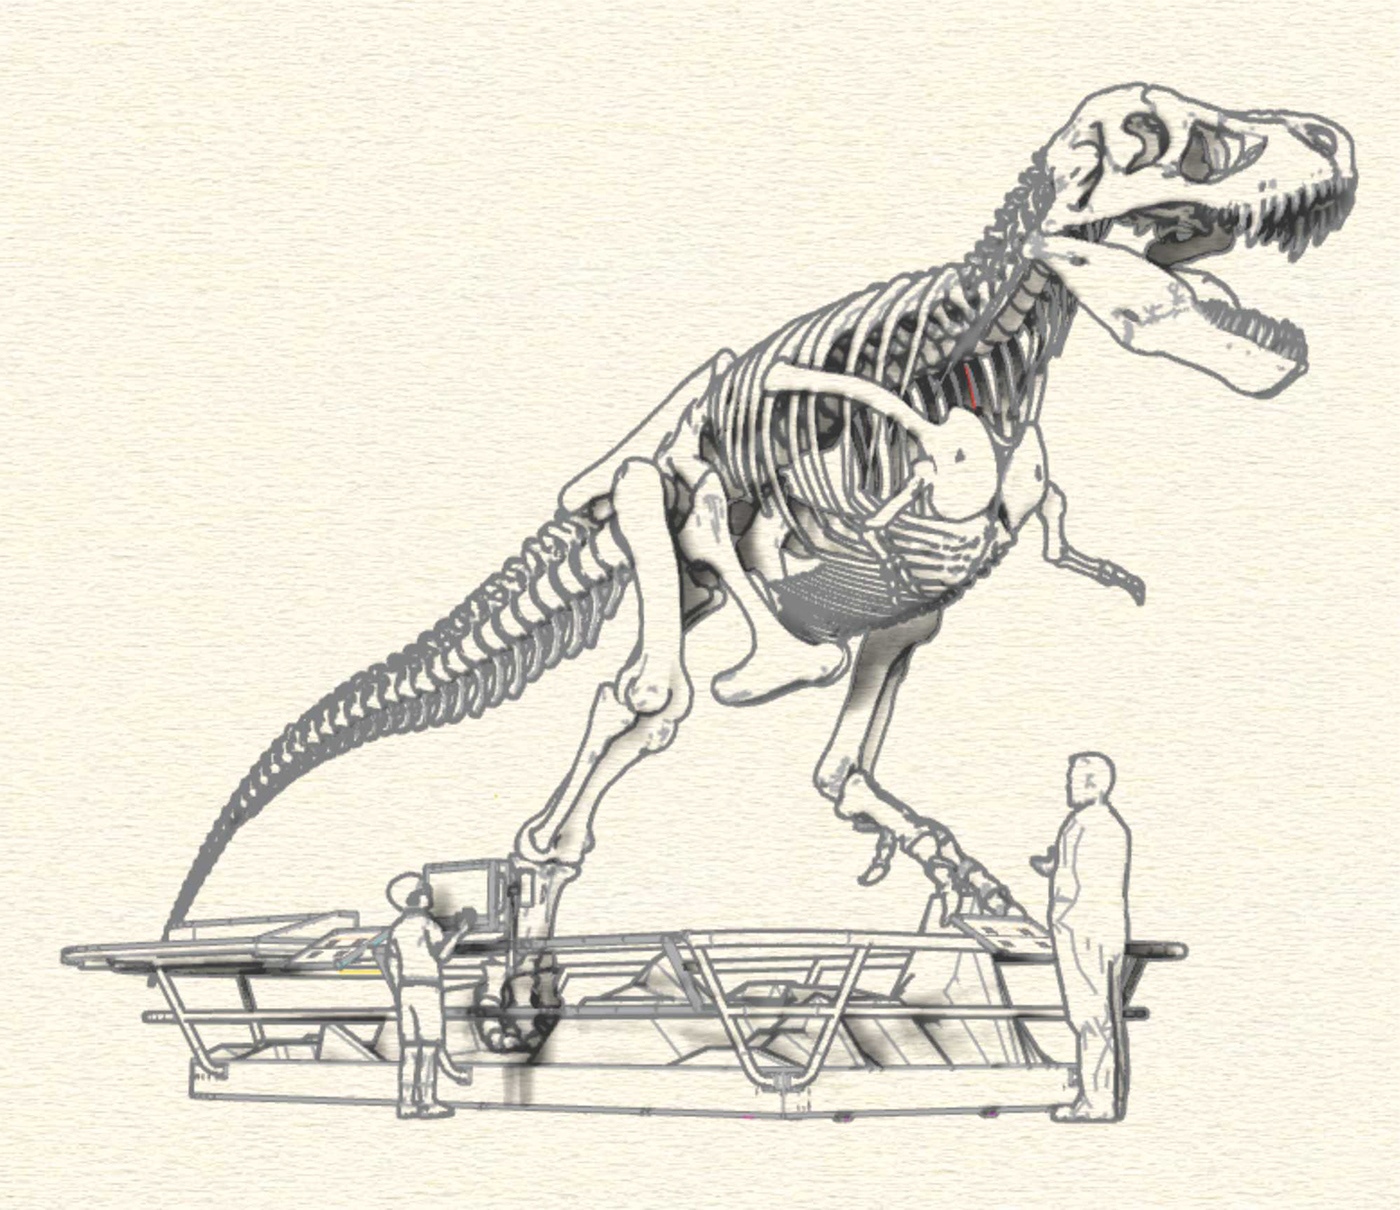 arte bogota Dinosaur dinosaurio maloka museo T rex